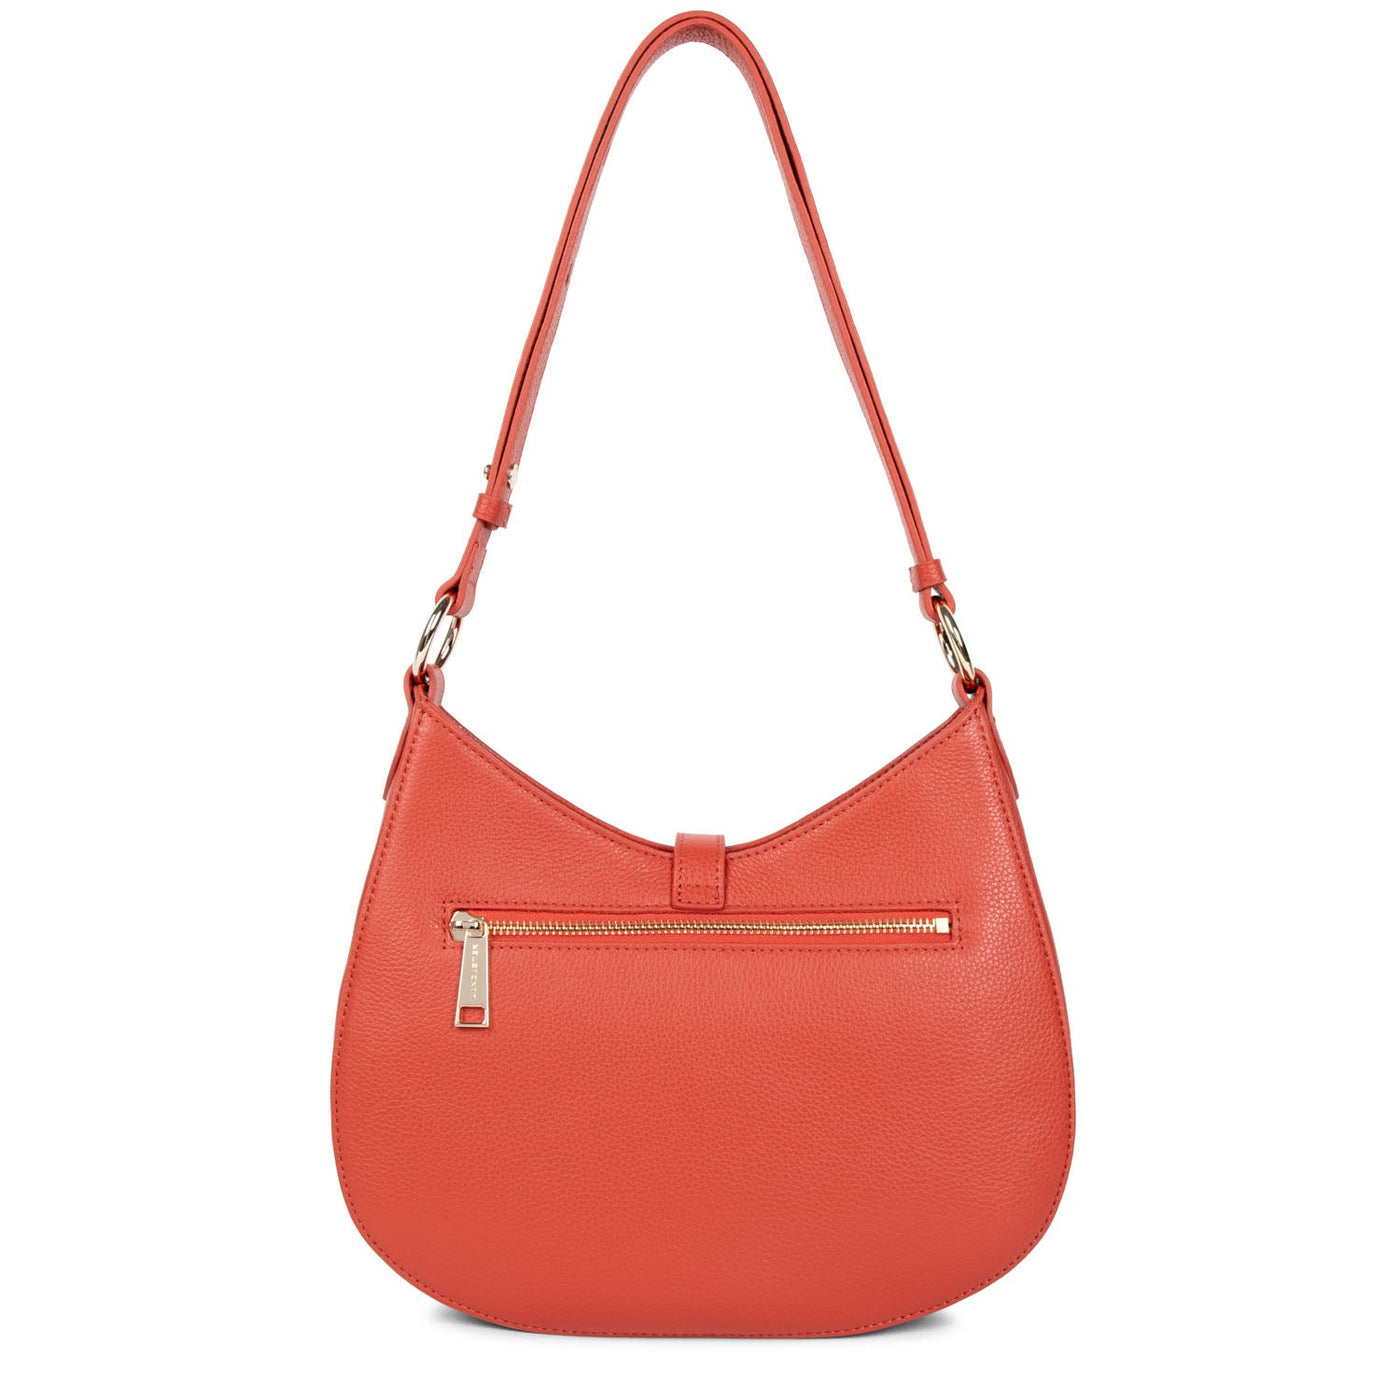 m shoulder bag - foulonné milano #couleur_blush